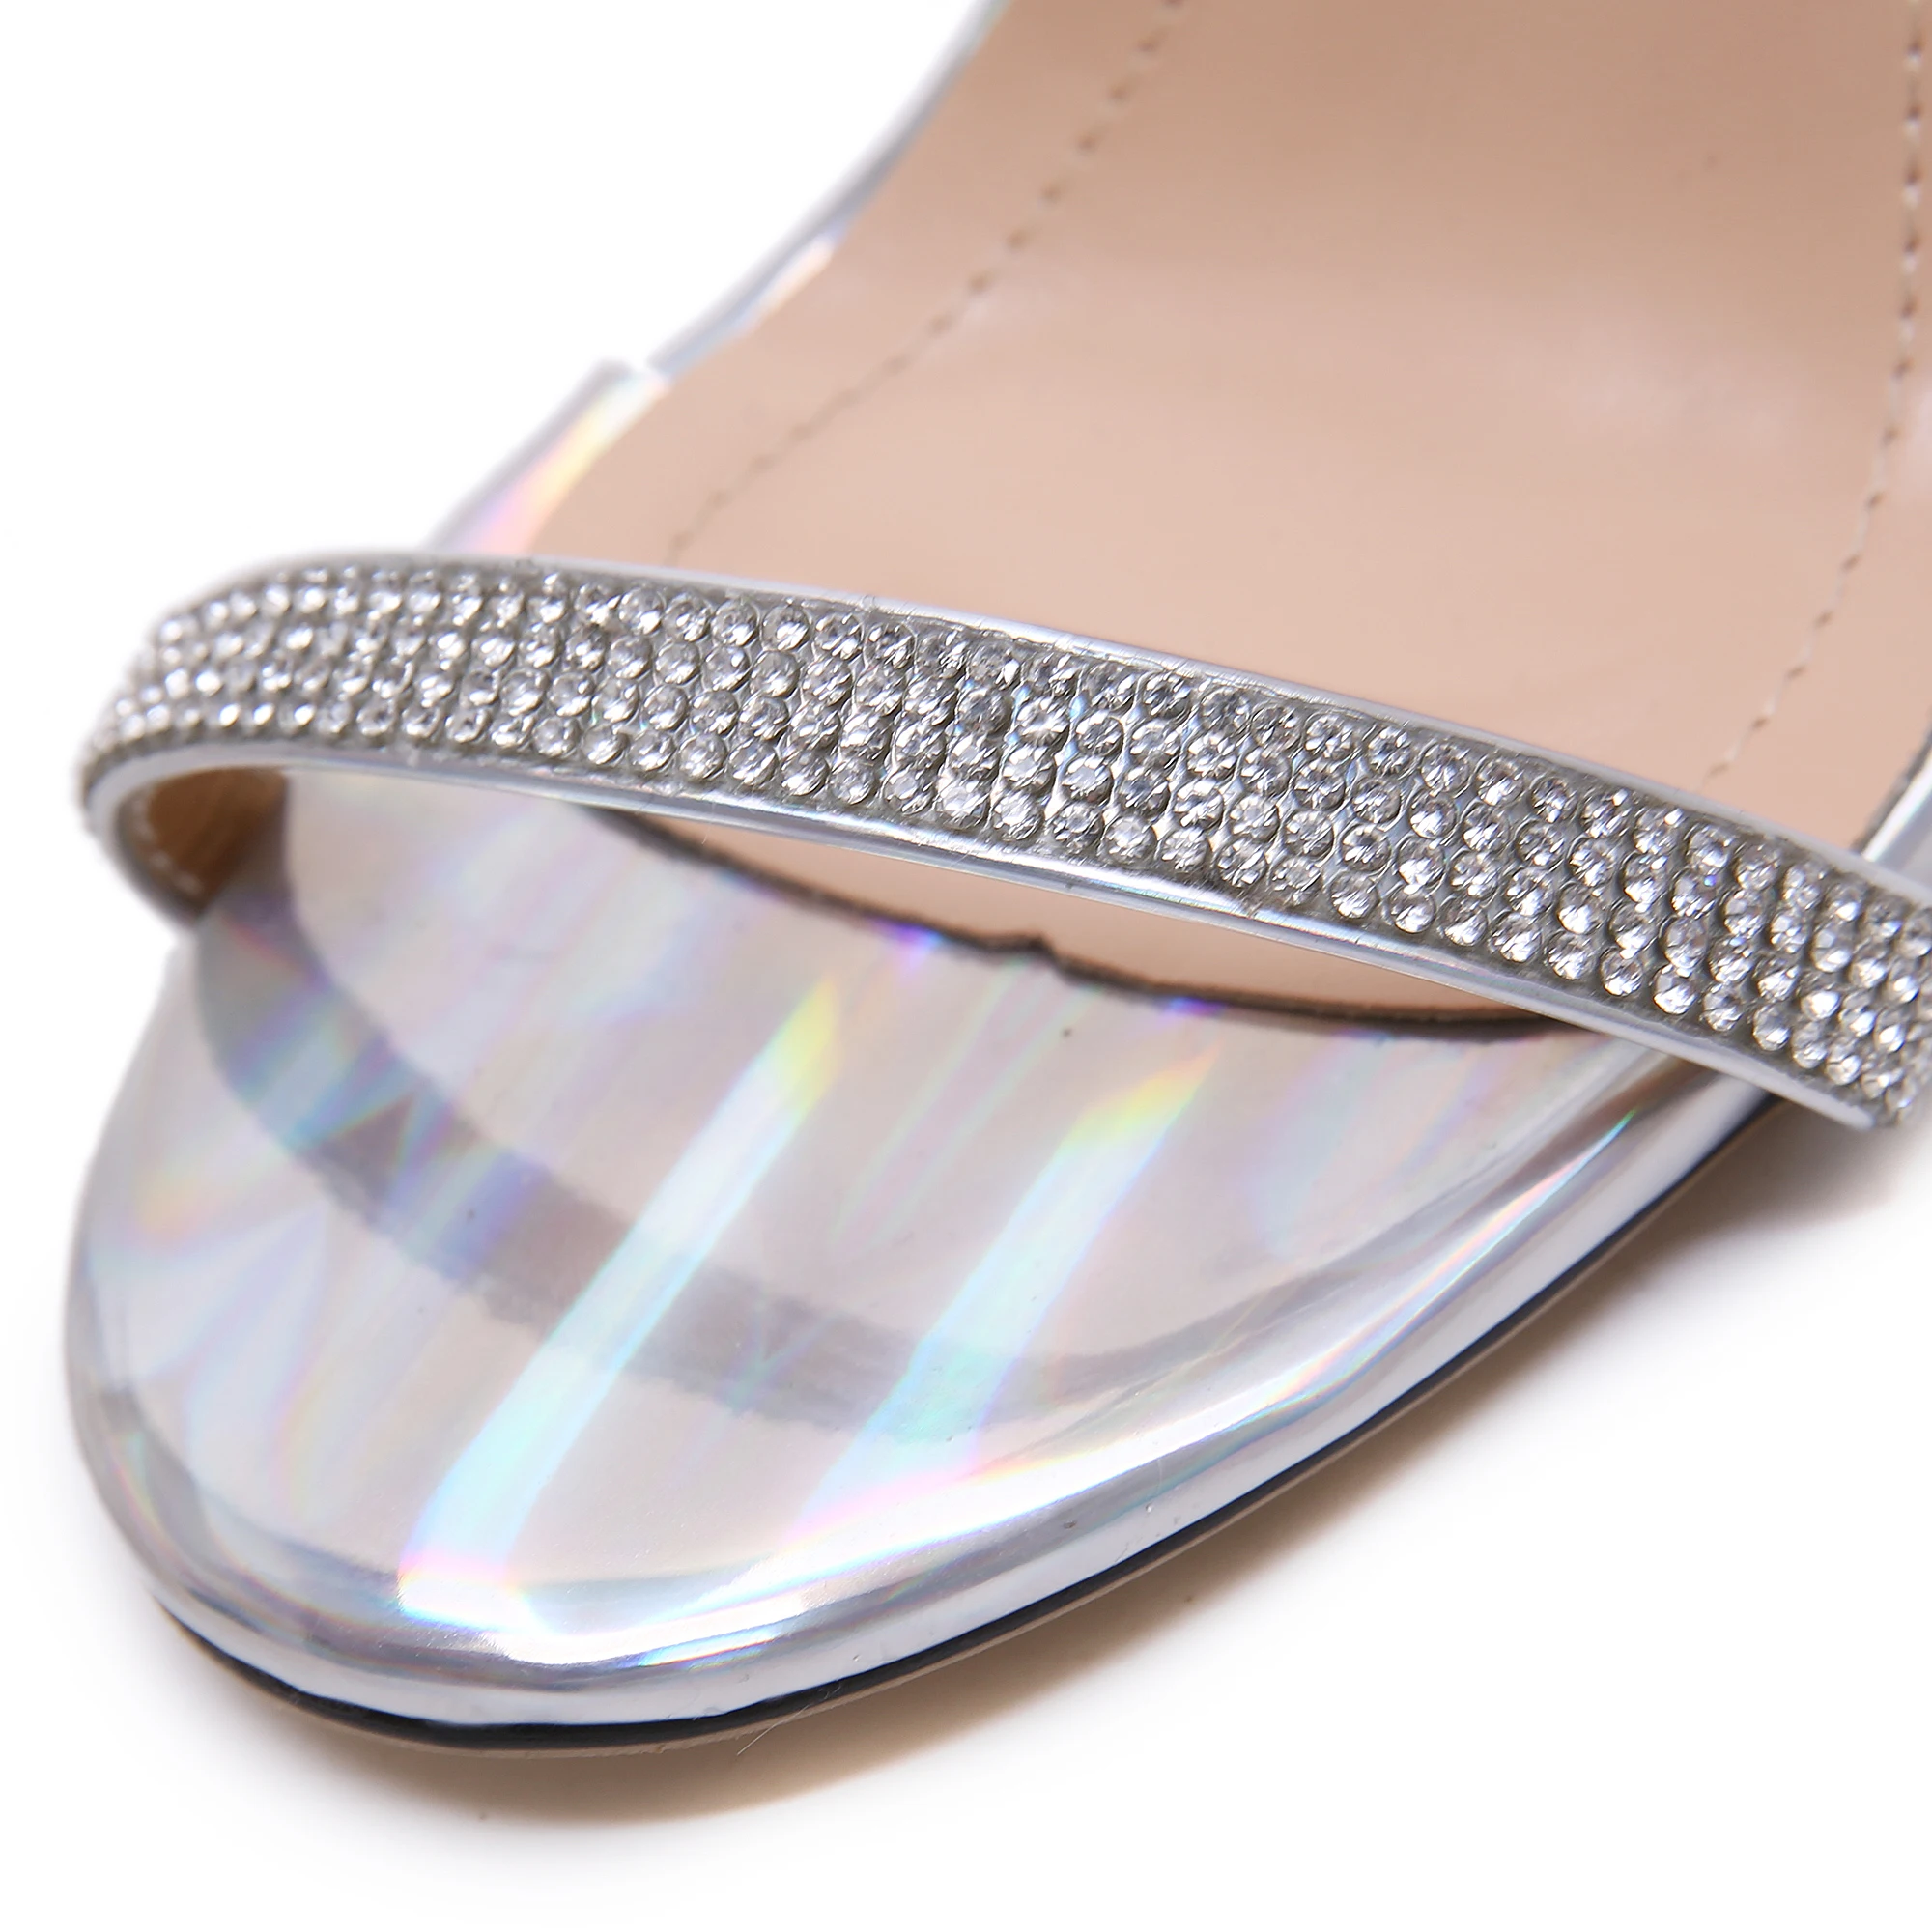 NIUFUNI летние туфли женские прозрачные босоножки на танкетке роскошные женские туфли на высоком каблуке со стразами модные туфли на танкетке